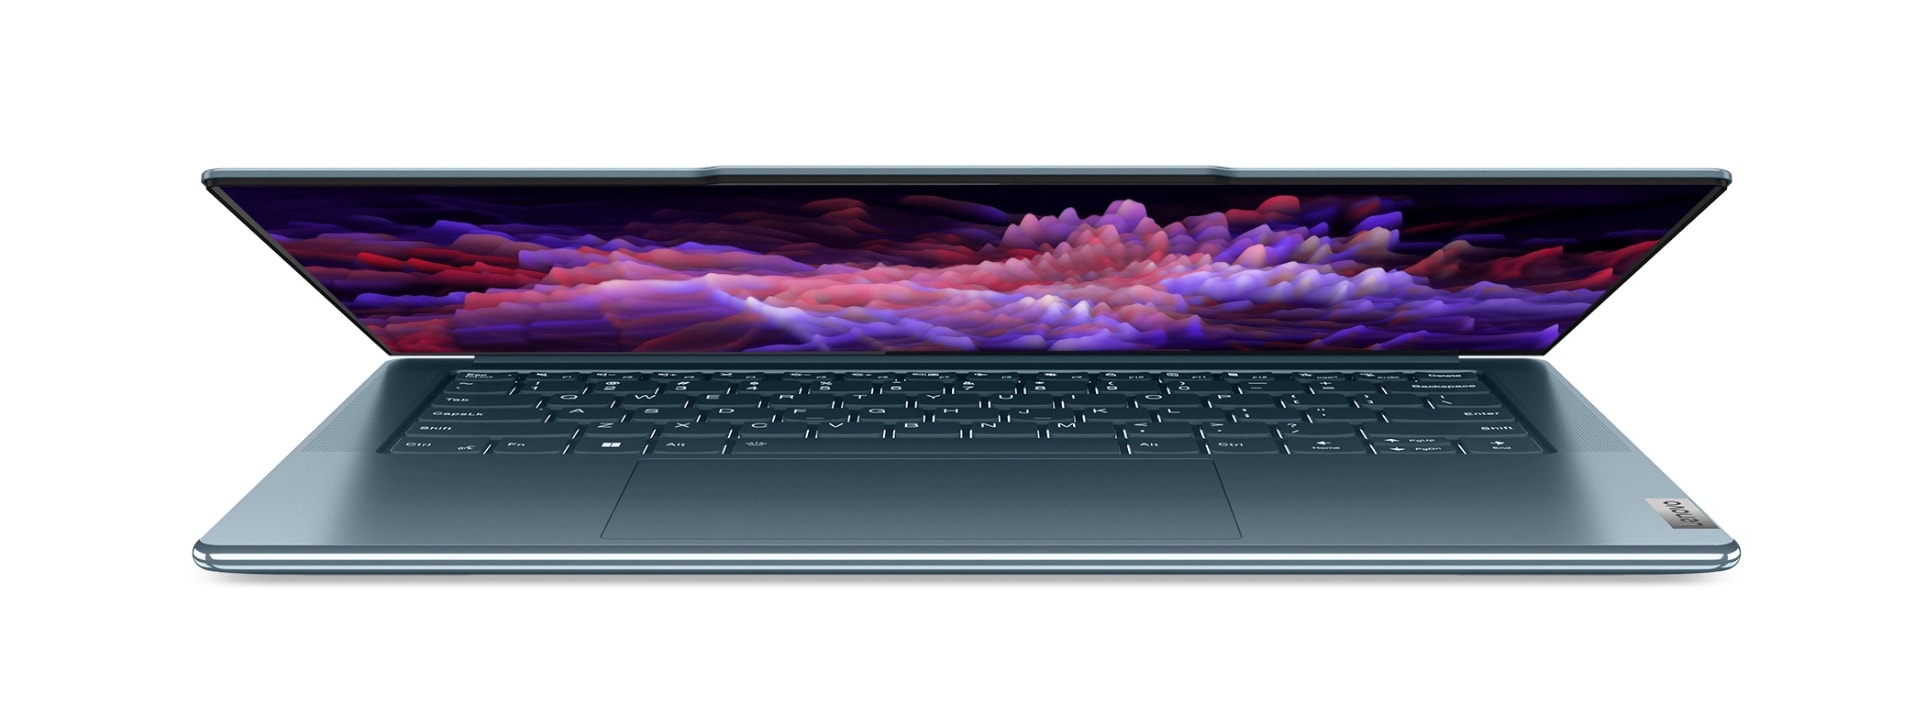 Vooraanzicht van halfopen Lenovo Yoga-laptop